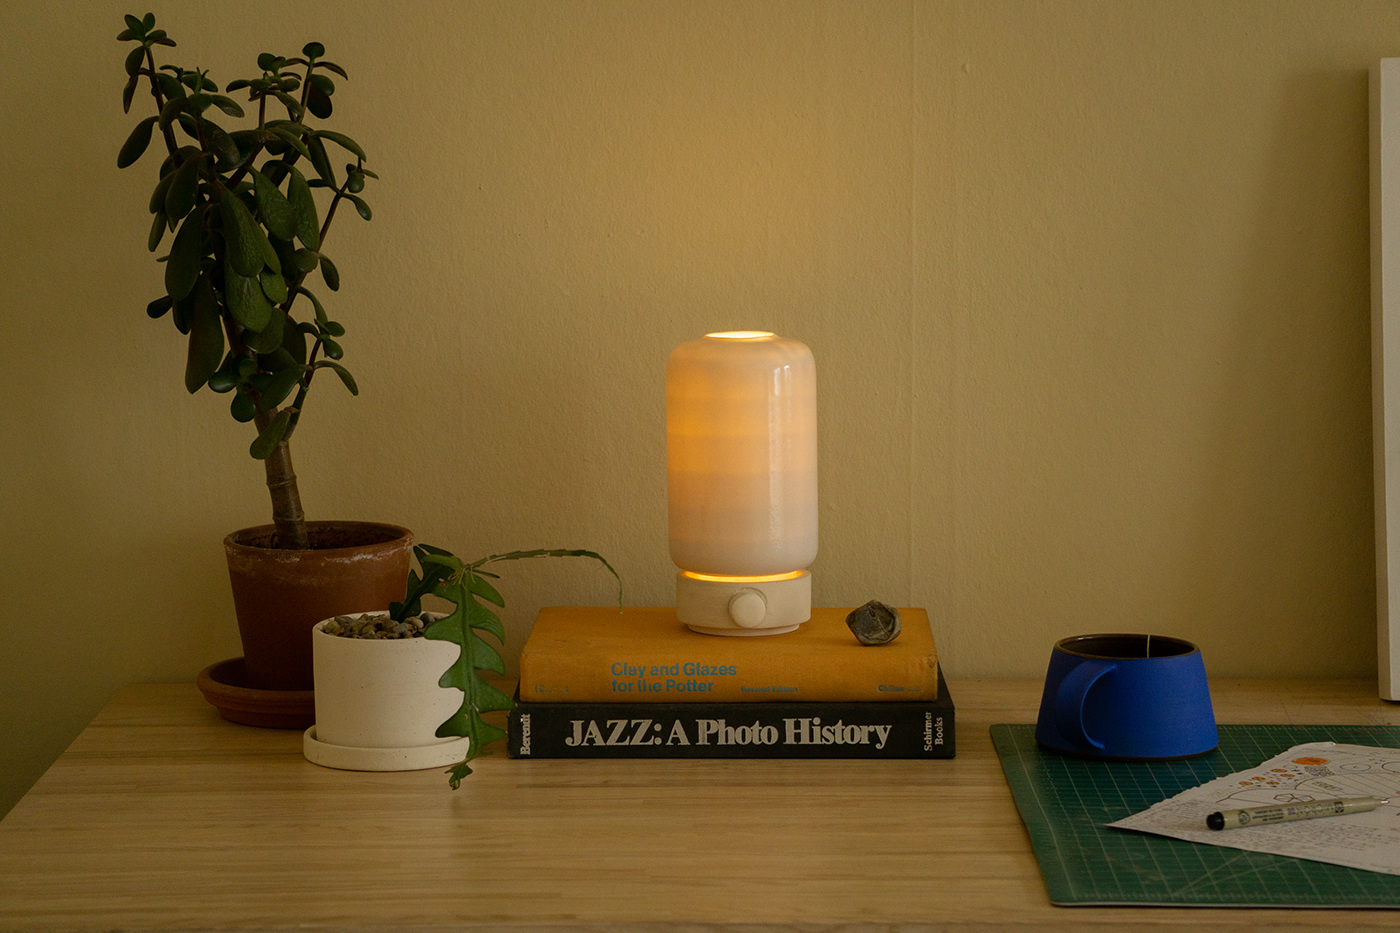 ceramics  ceramics design concept home goods industrial design  lighting Lighting Design  product product design 